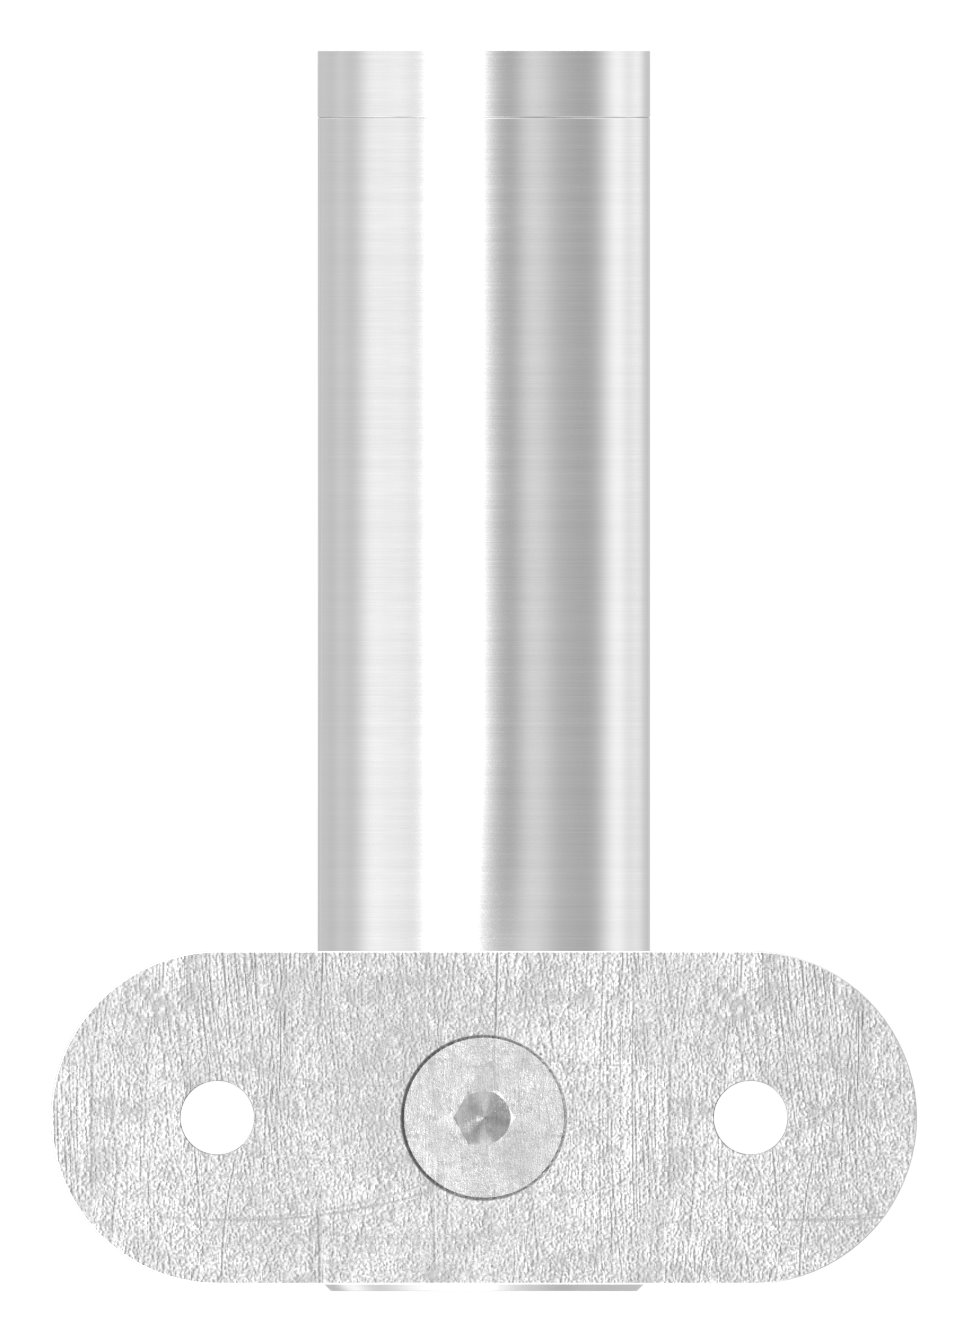 Handlaufhalter mit Handlaufanschlussplatte flach, V2A